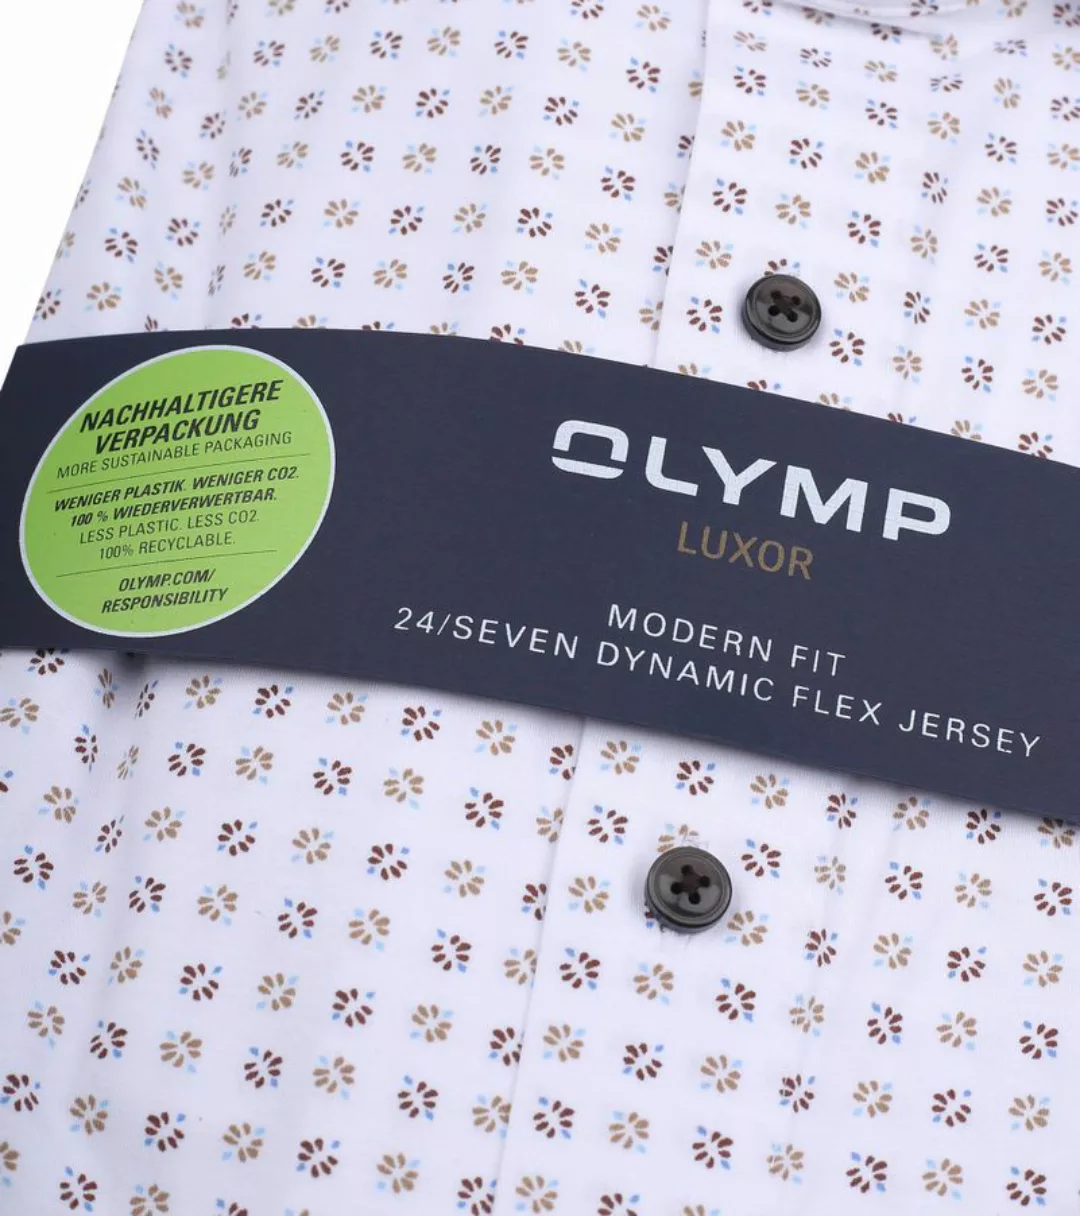 OLYMP Luxor Hemd mit Musterdruck - Größe 39 günstig online kaufen